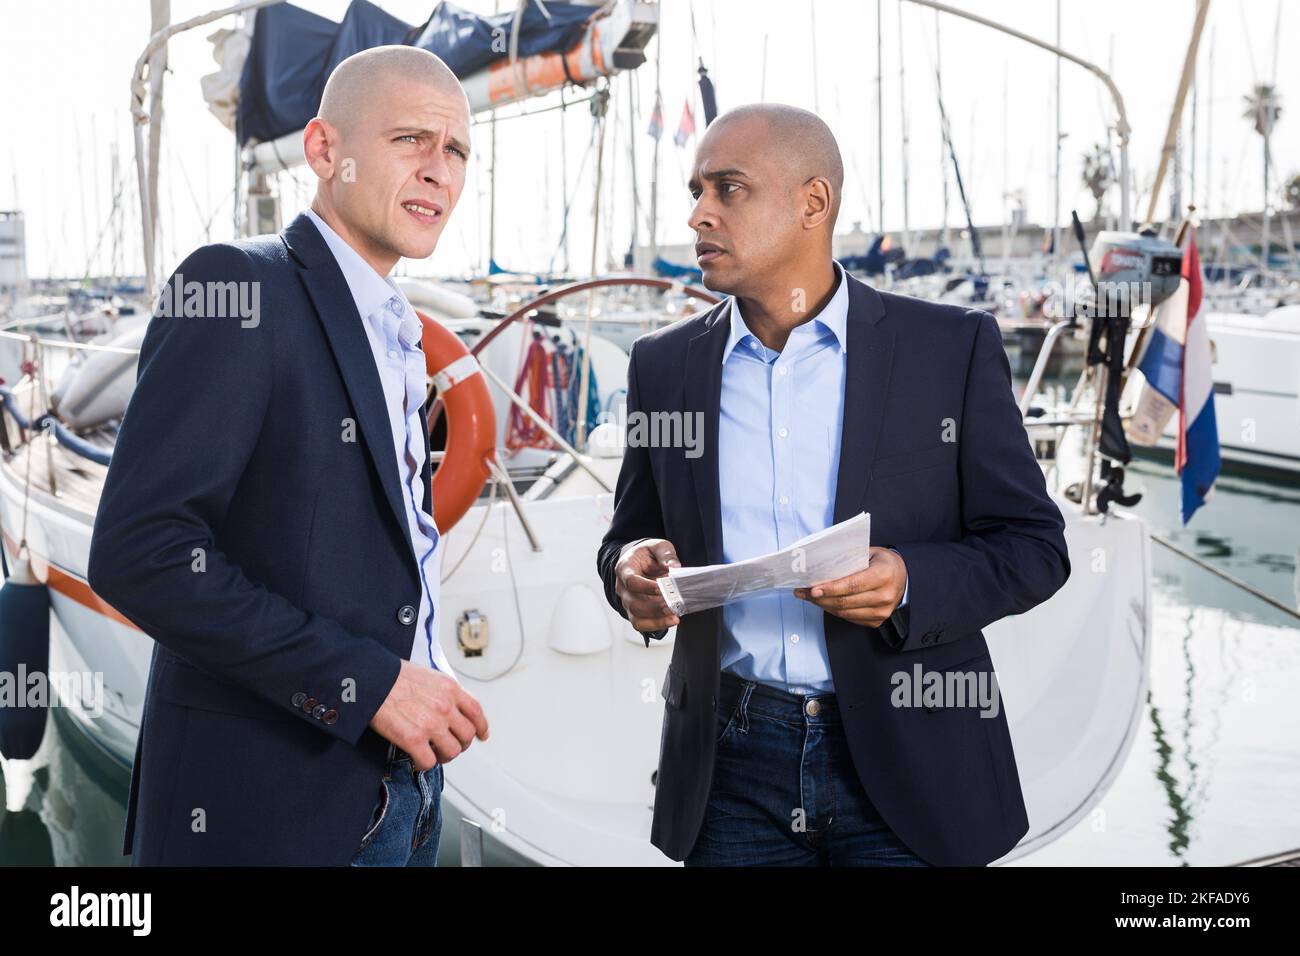 Zwei männliche Geschäftsleute vereinbaren einen Deal am Seehafen Stockfoto